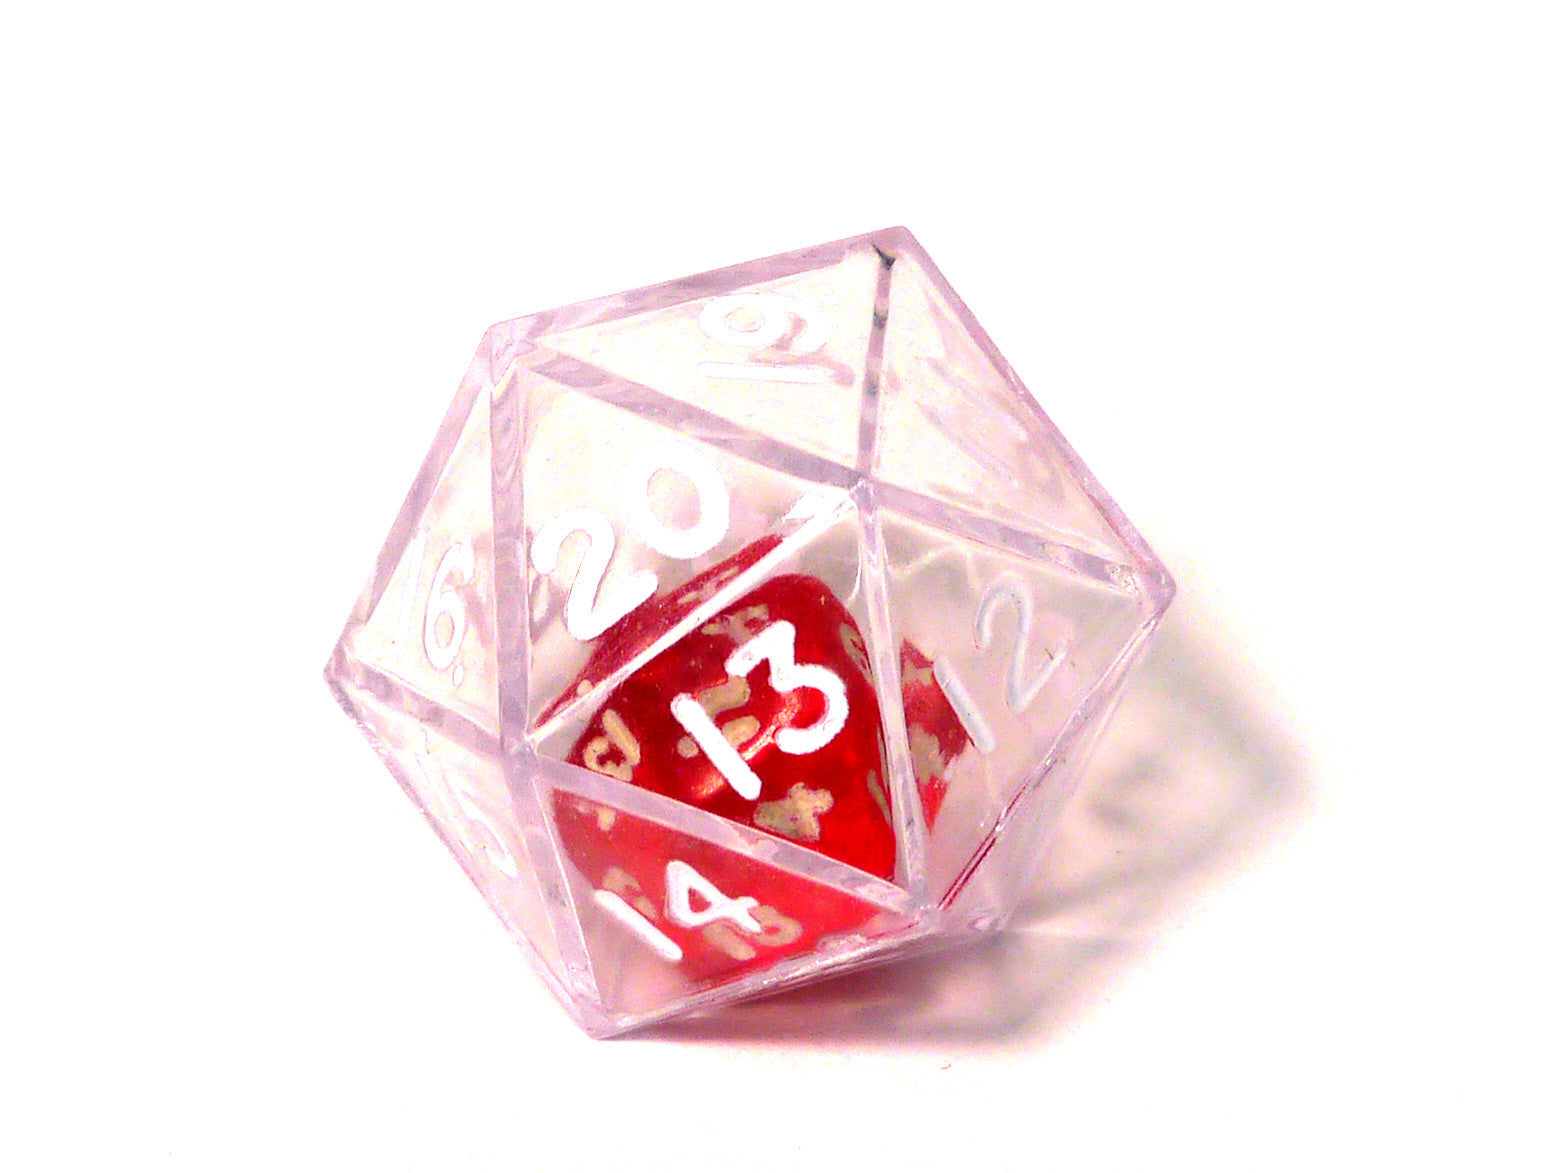 D20 inside a D20 dice – Maths Gear - Mathematical curiosities, games and  gifts